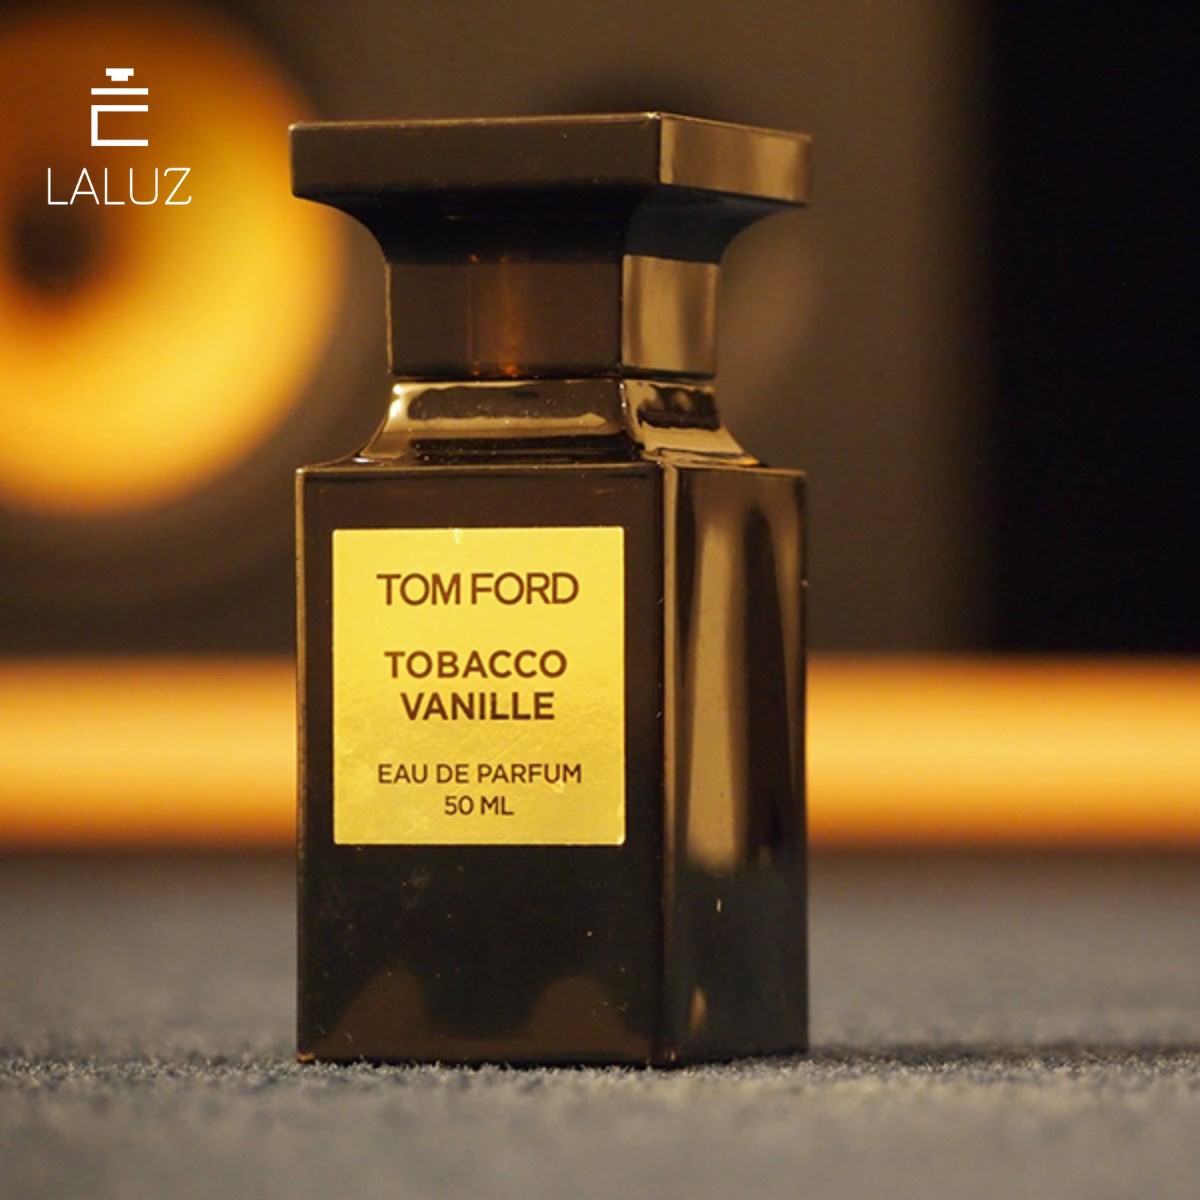 Nước hoa Tom Ford dành cho cả nam lẫn nữ Tobacco Vanille
